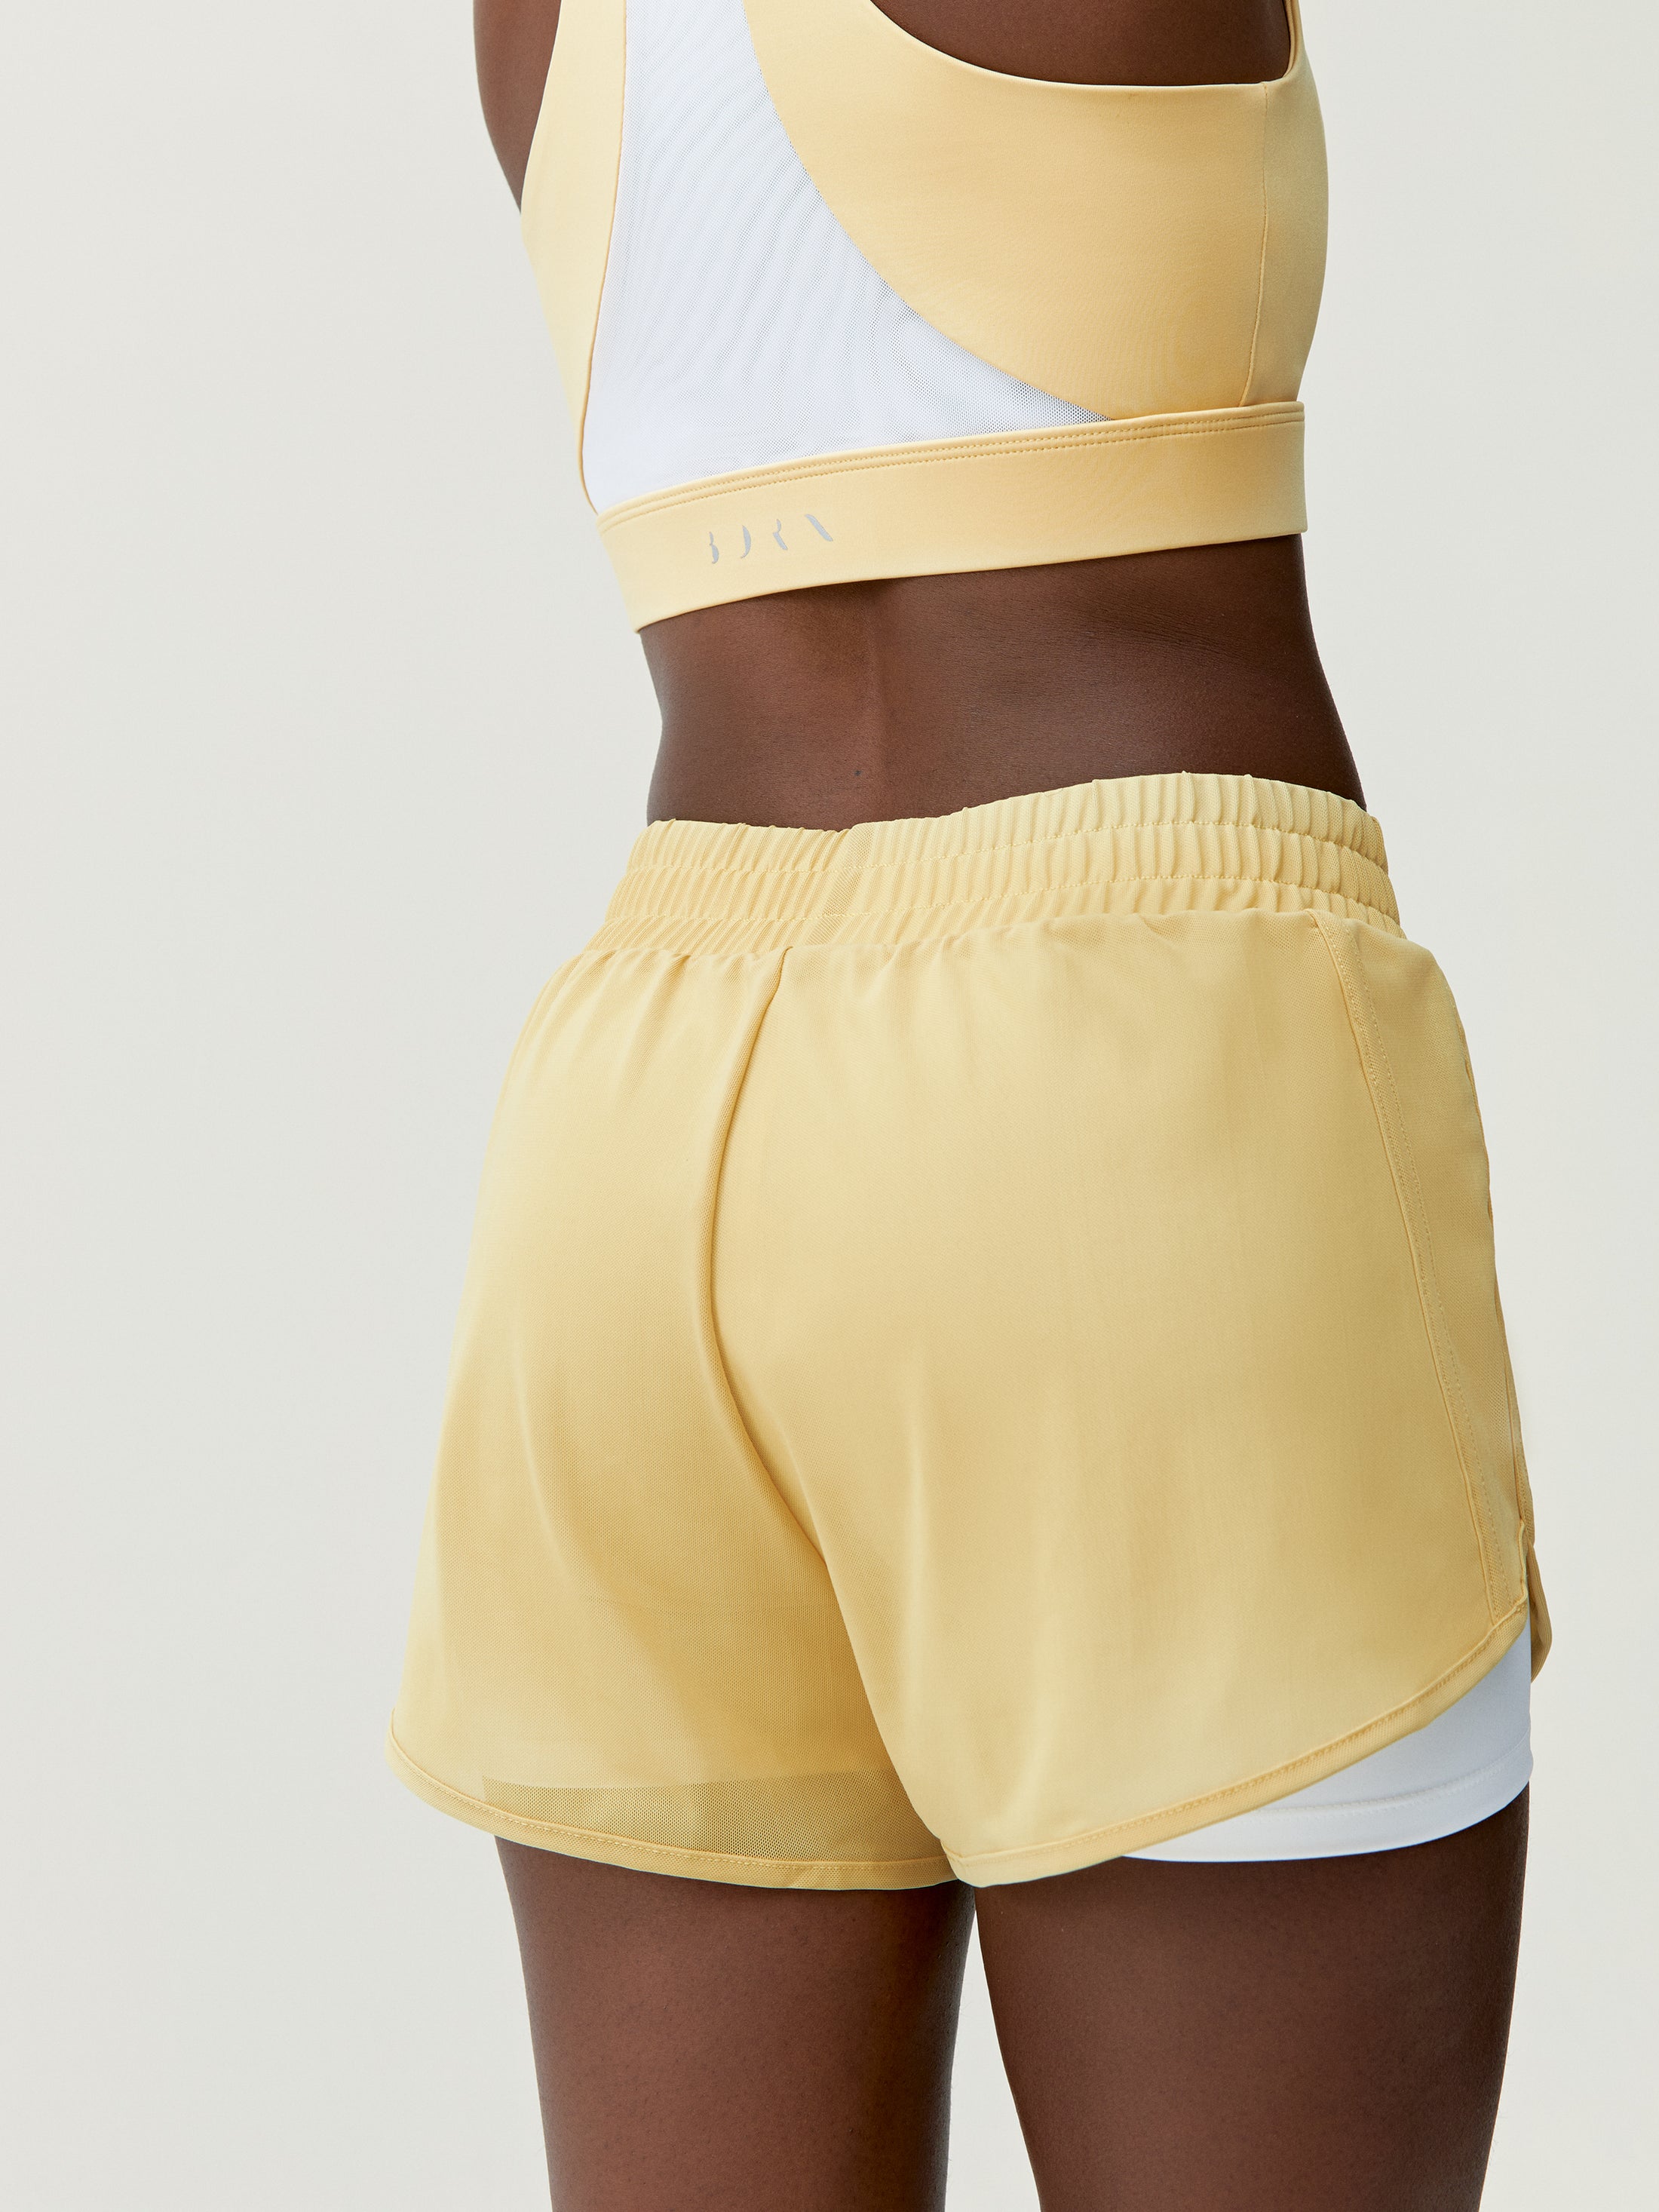 Padma 2.0 Short in Yellow Soft/White